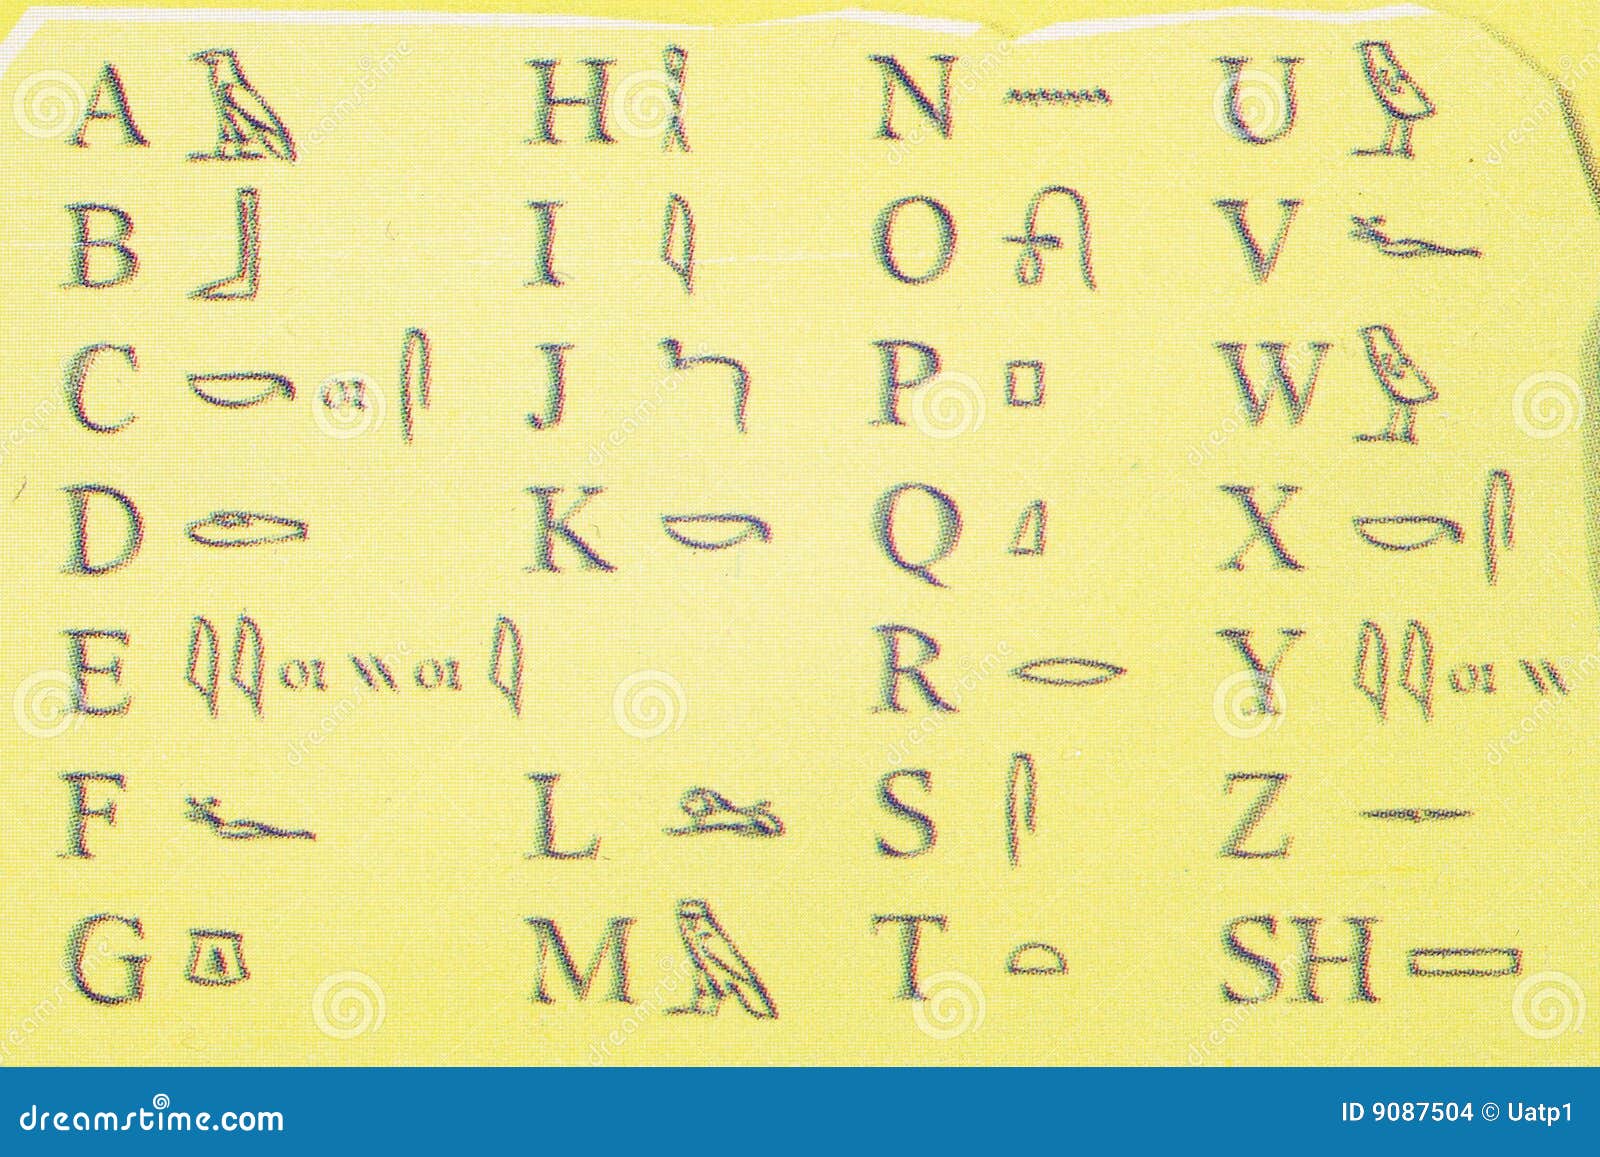 Alfabeto de Egipto foto de archivo. Imagen de libro, carta - 9087504